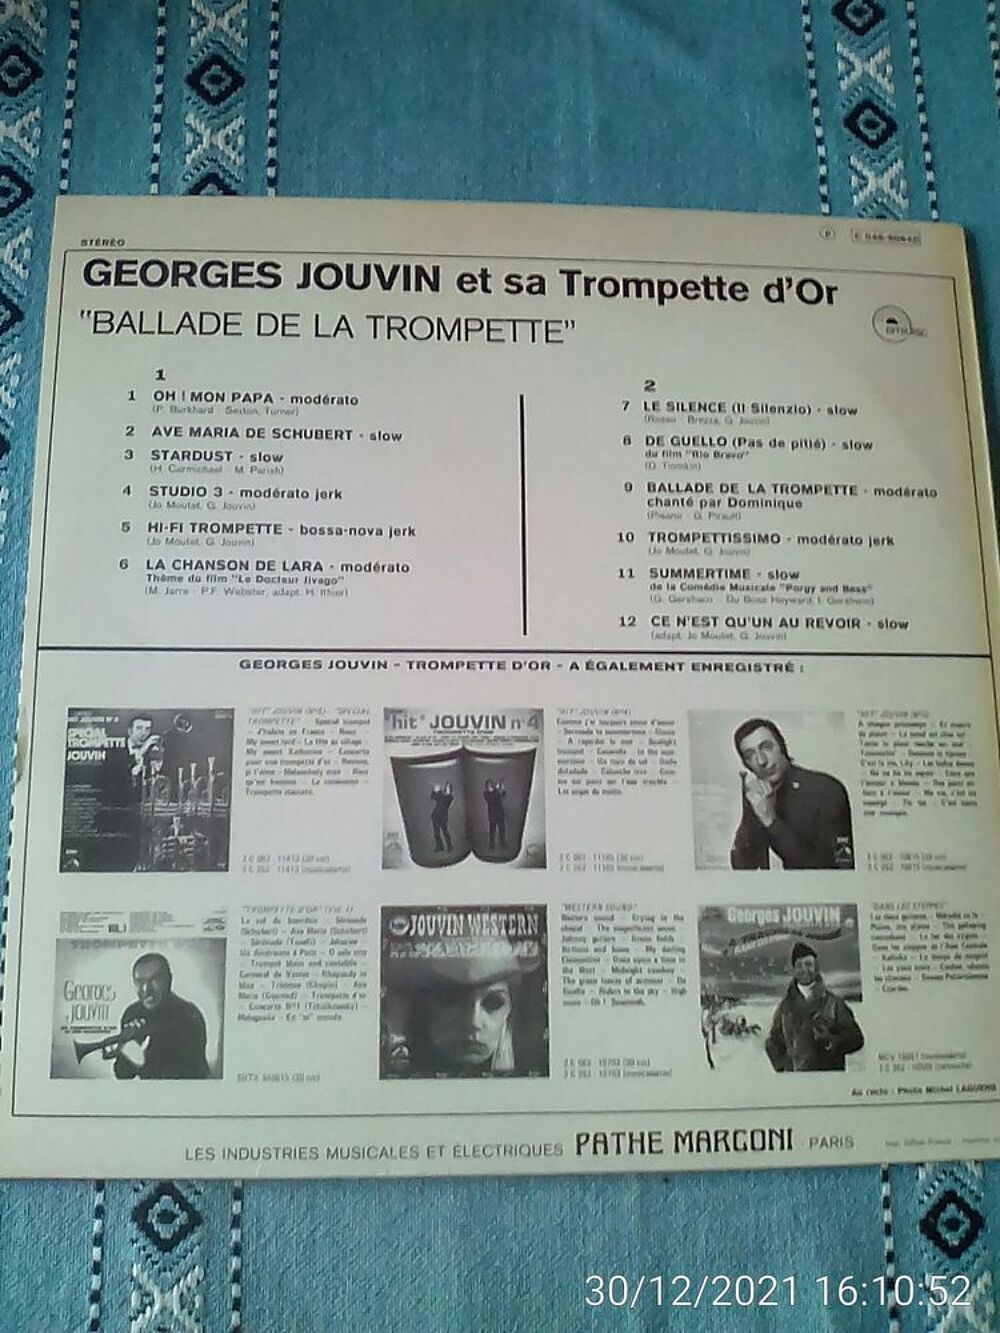 Vinyle 33T TROMPETTE D'OR ? GEORGES JOUVIN CD et vinyles